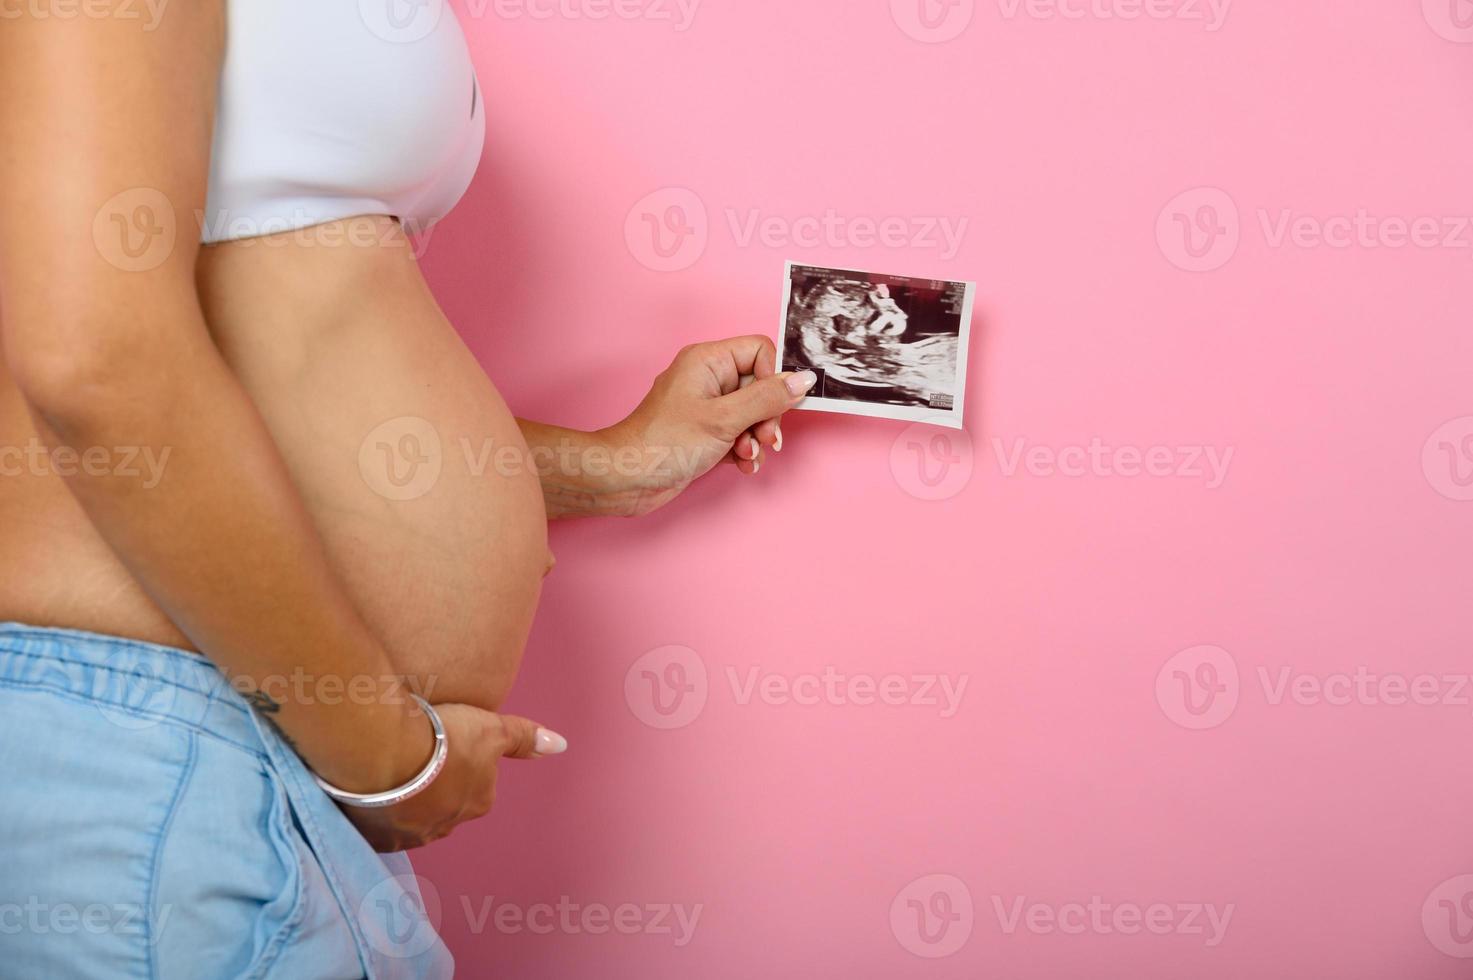 gravid mamma visar ett ultraljud av henne son foto